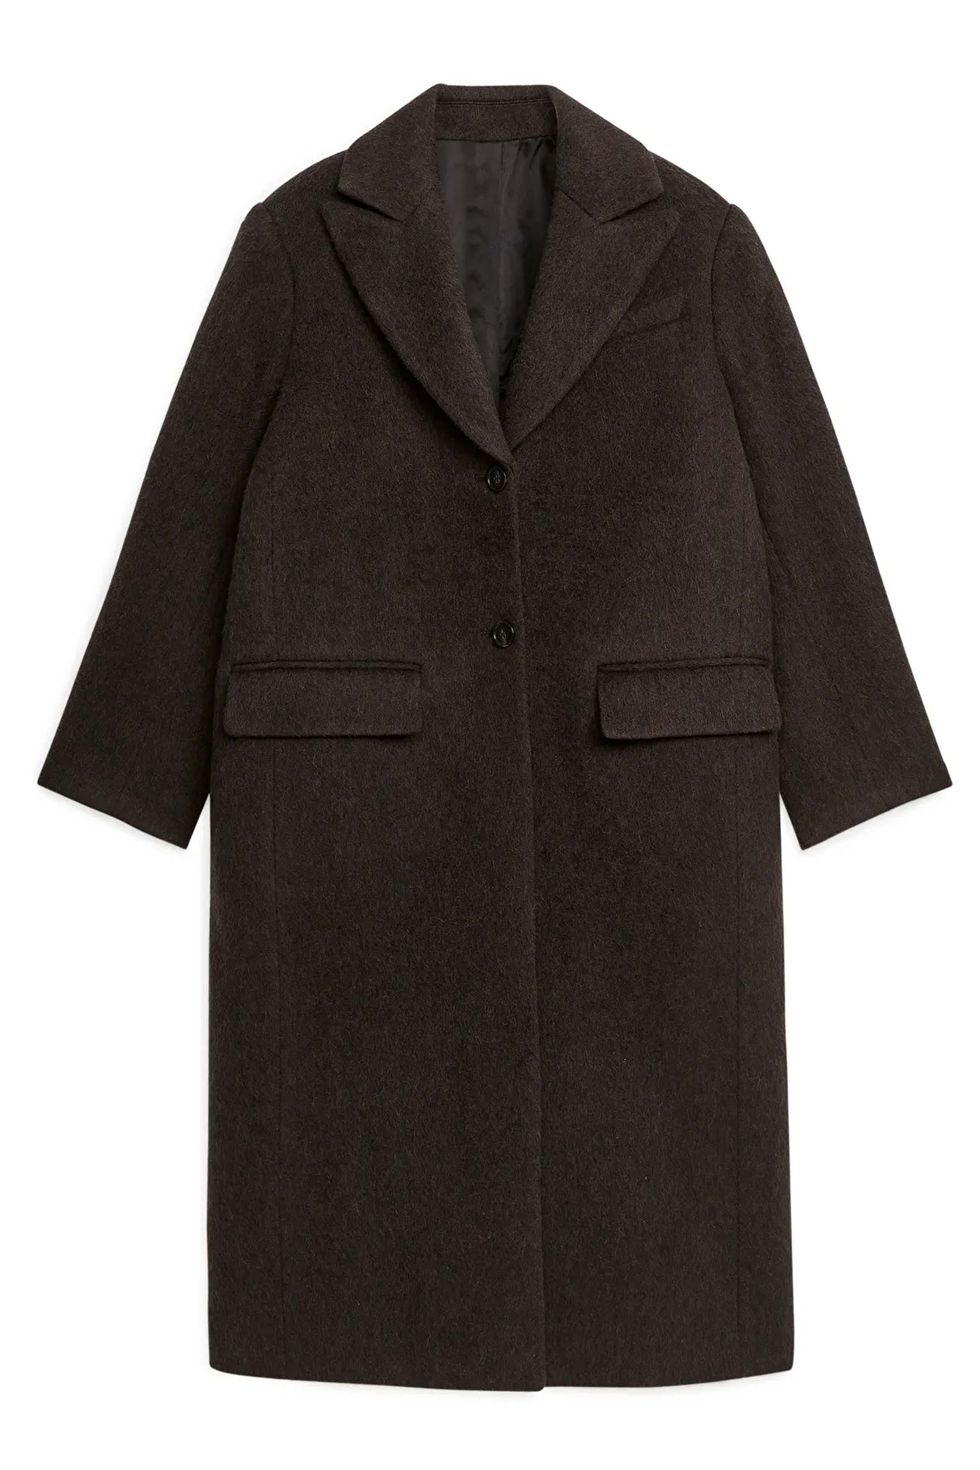 arket wool coat